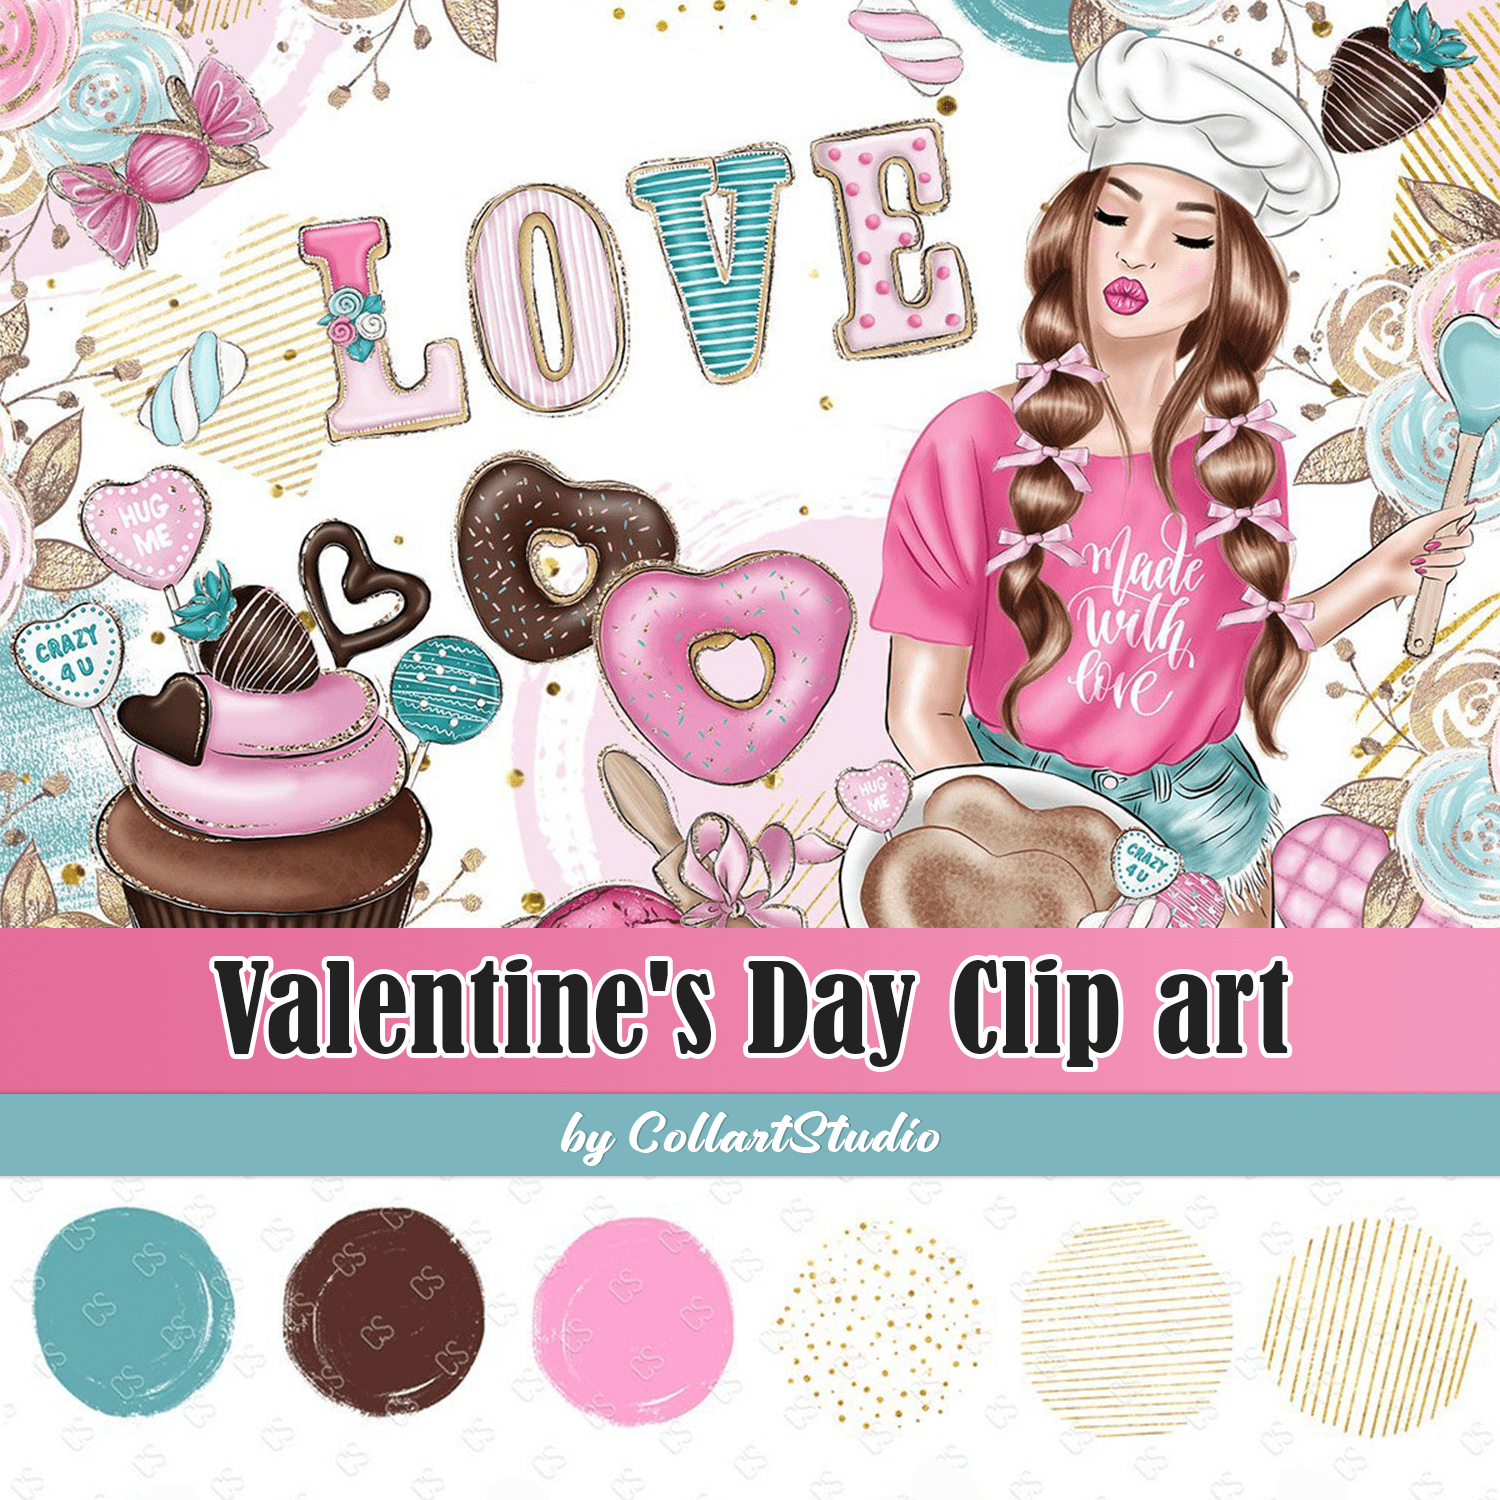 Valentine's Day Clip art cover.